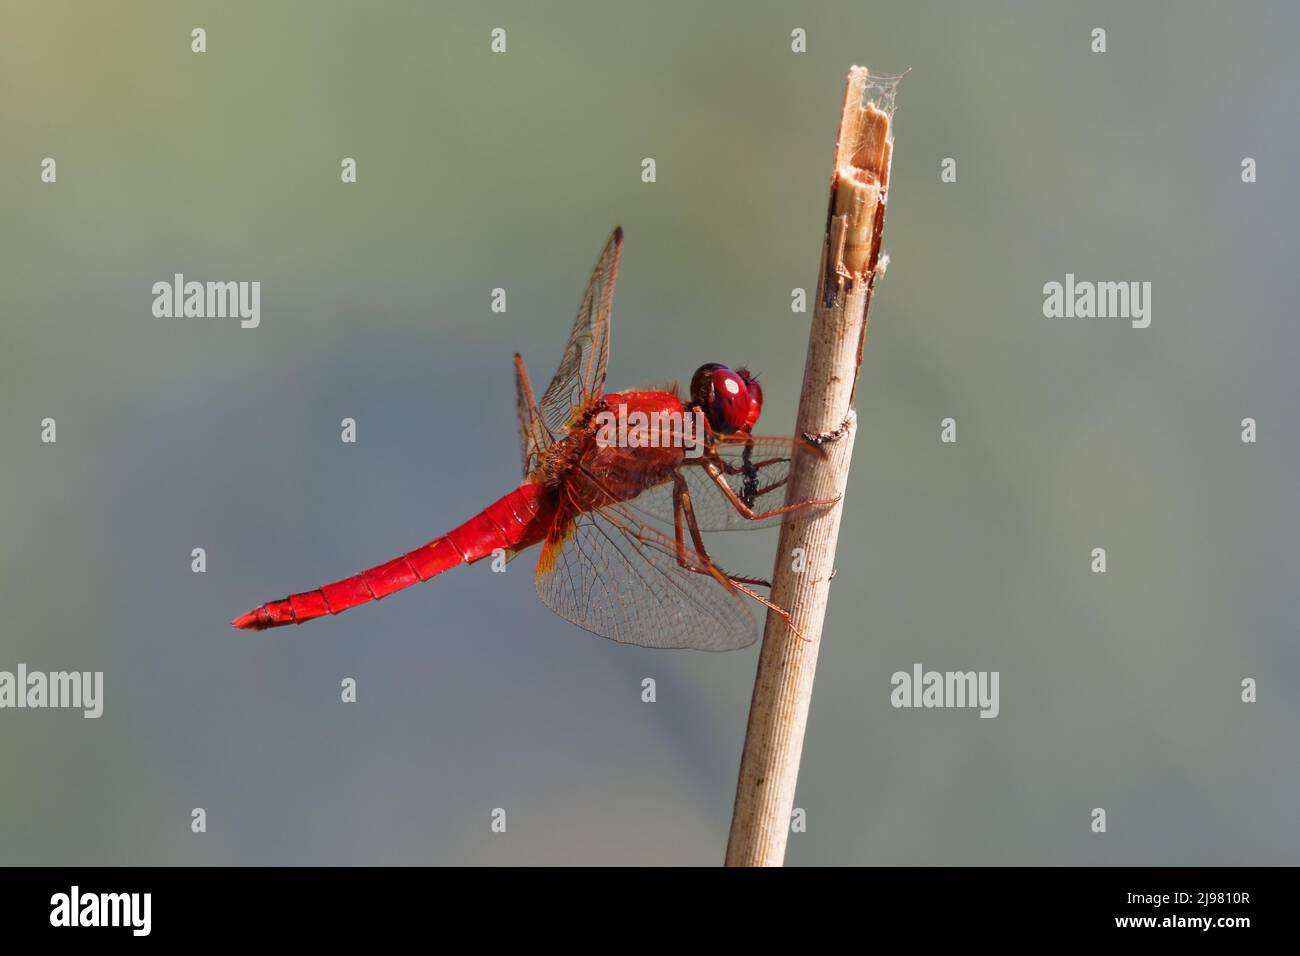 Occhio scarlatto immagini e fotografie stock ad alta risoluzione - Alamy